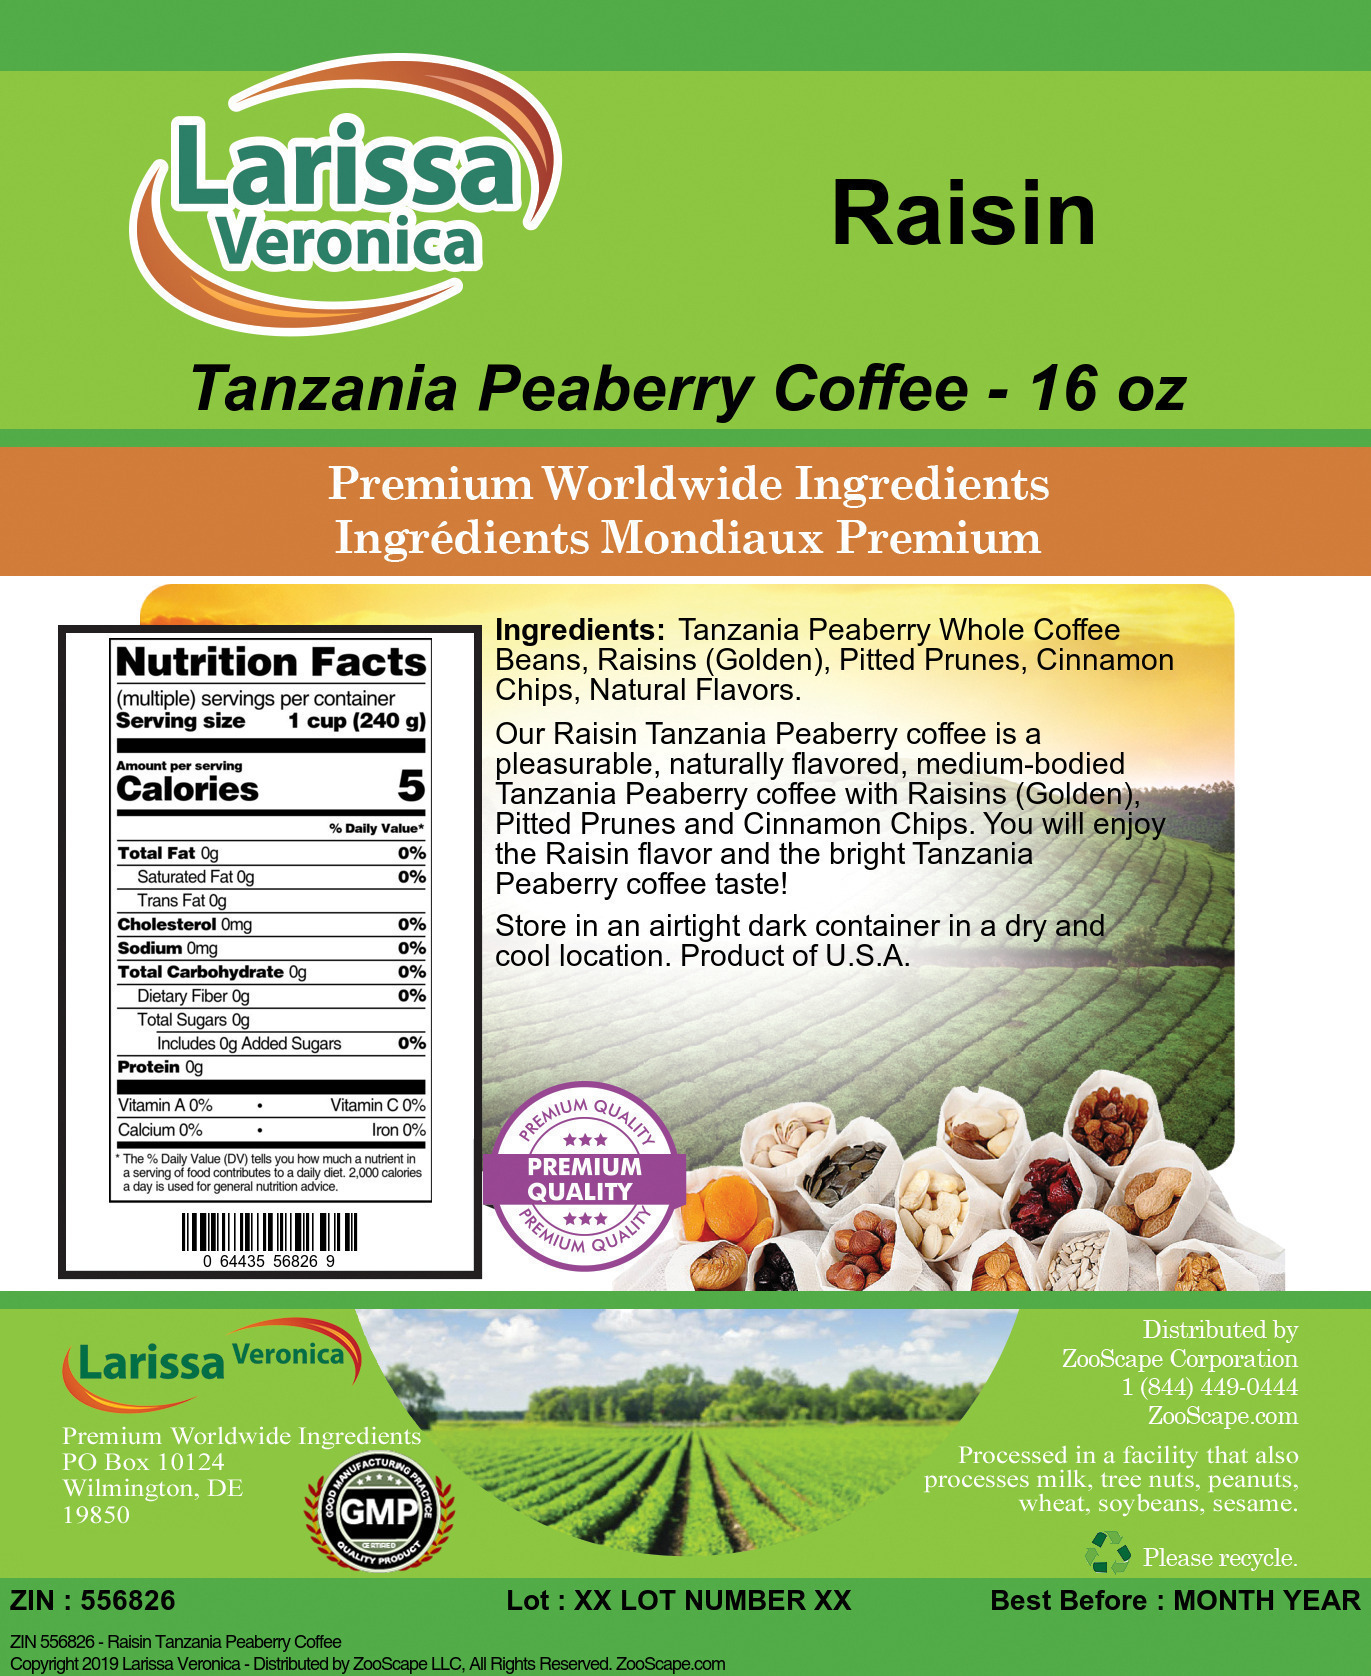 Raisin Tanzania Peaberry Coffee - Label